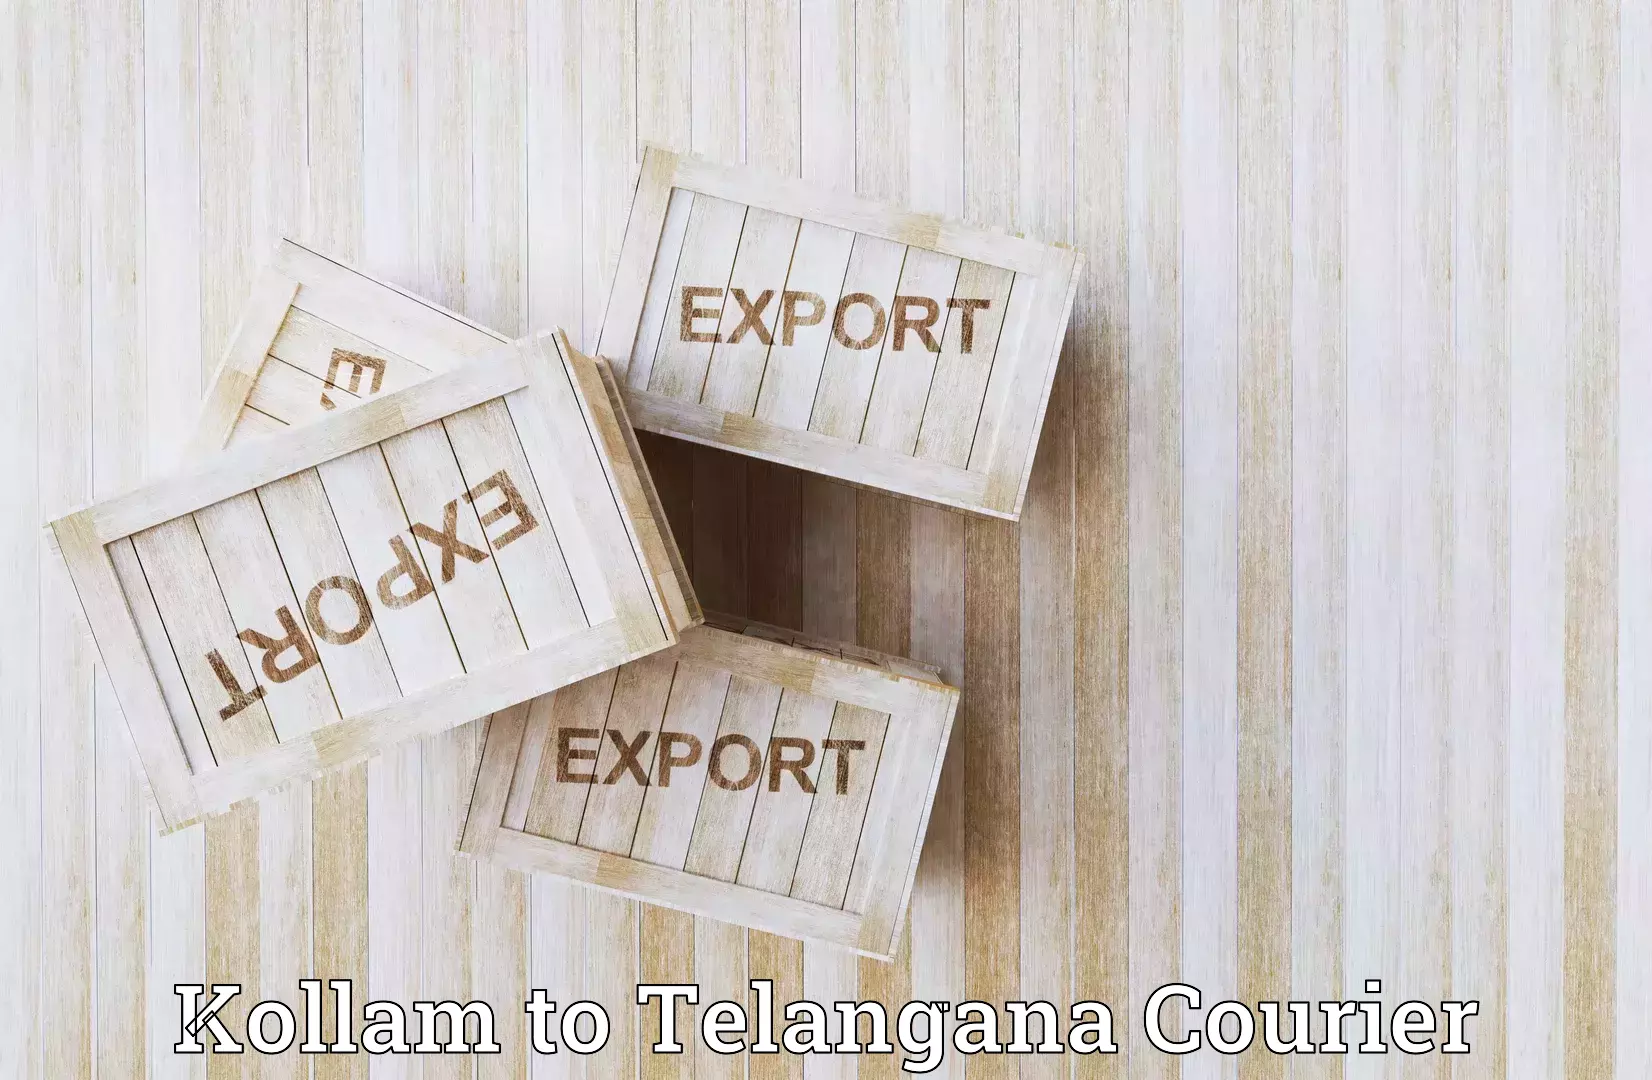 High-capacity parcel service Kollam to Yellandu